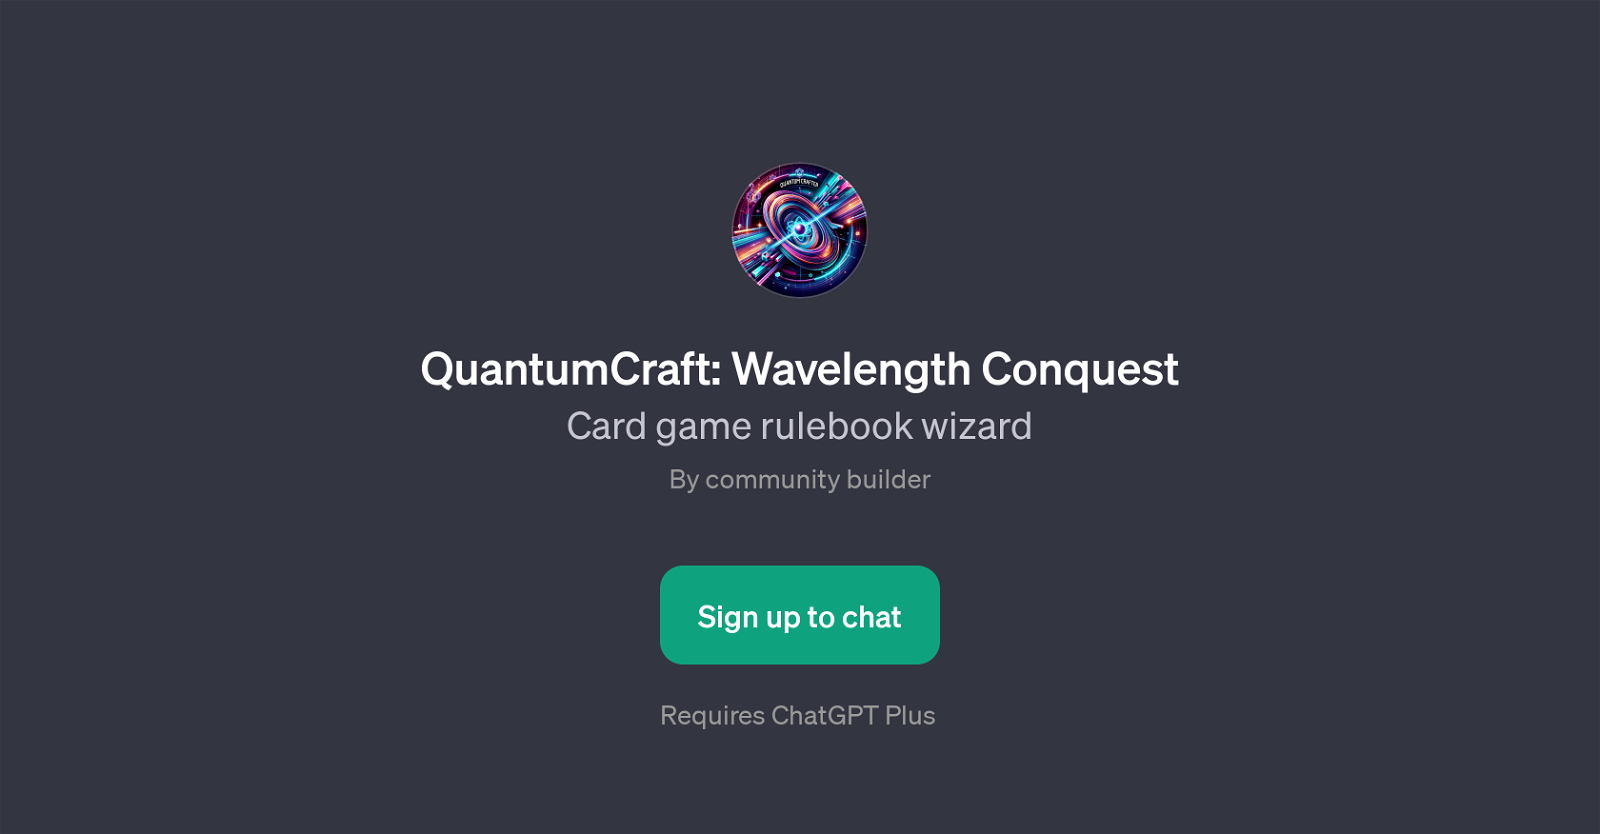 QuantumCraft: Wavelength Conquest website